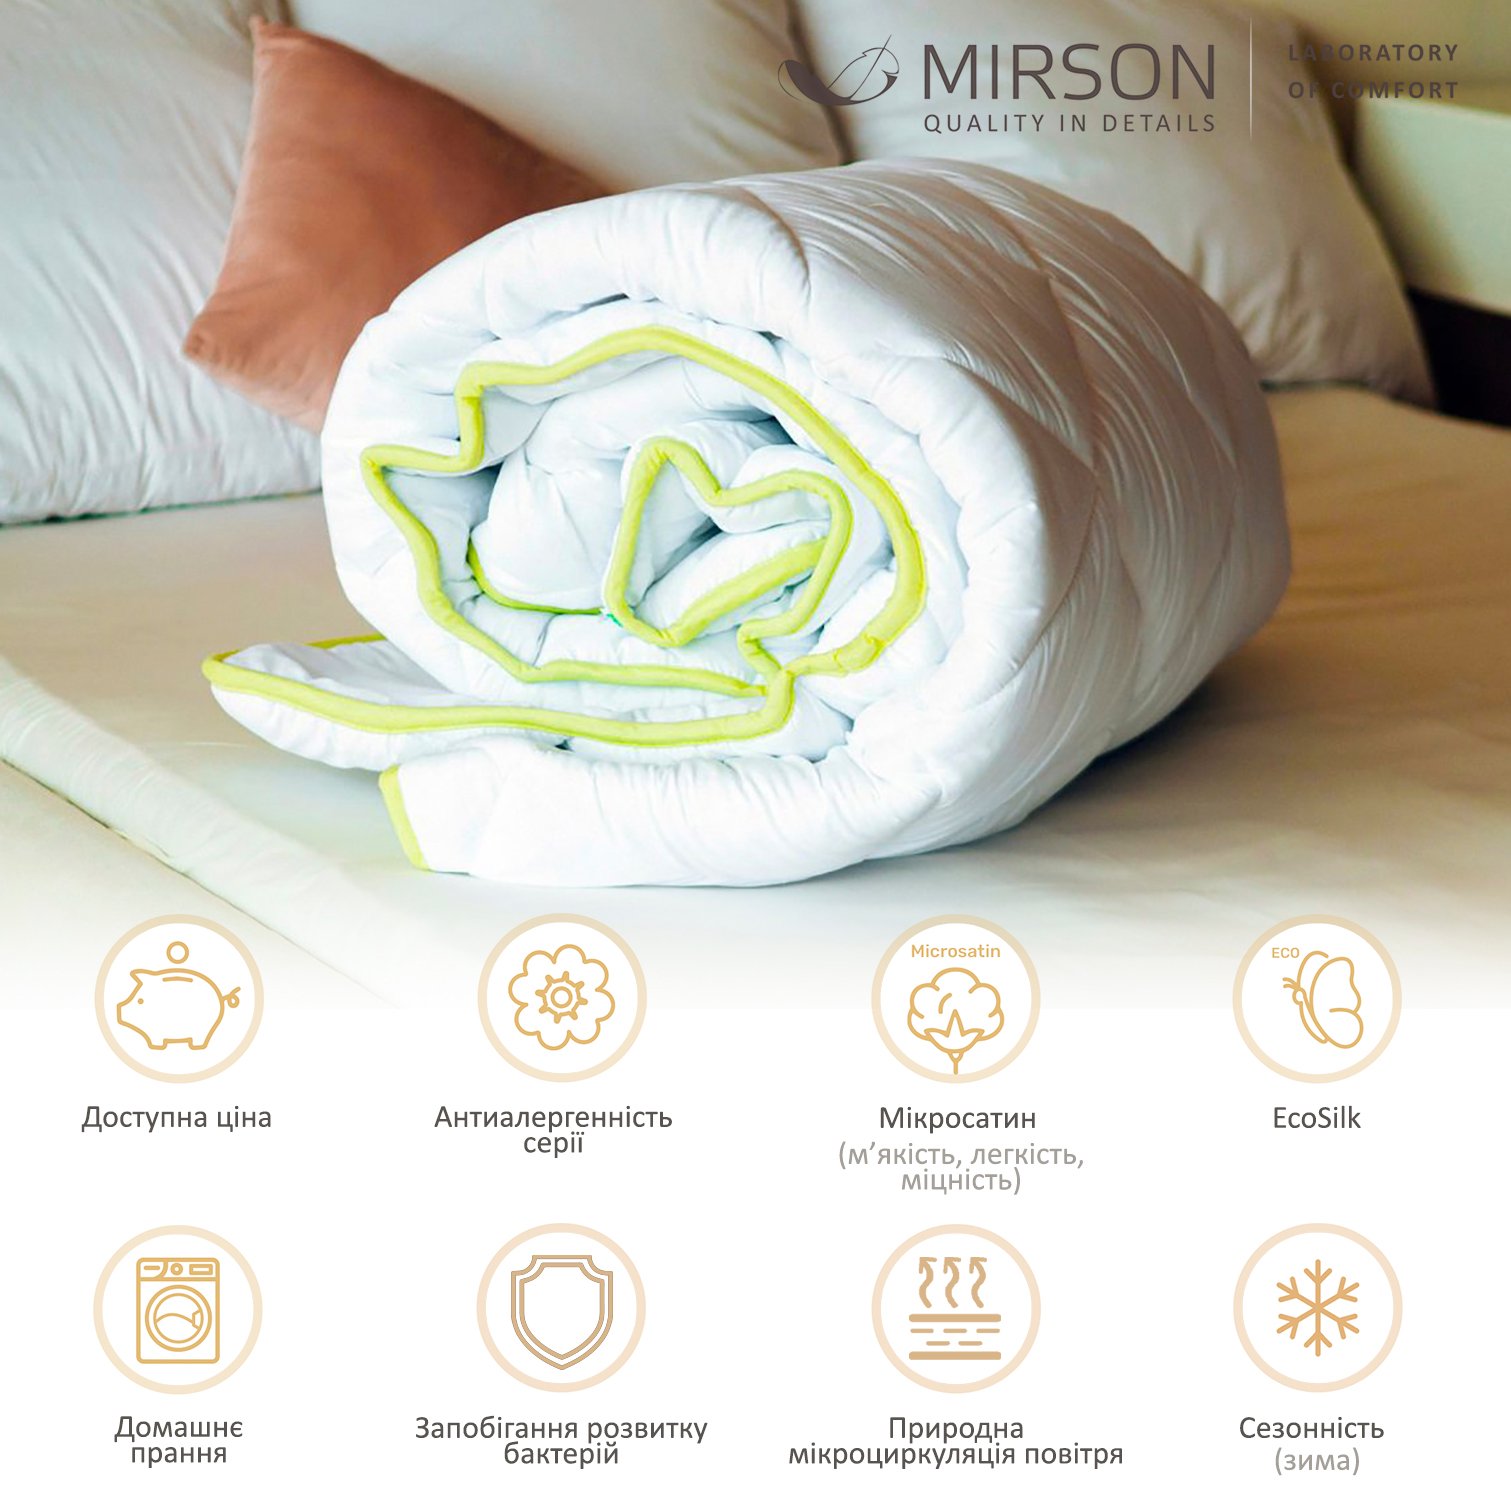 Одеяло антиаллергенное MirSon EcoSilk №003, зимнее, 140x205 см, белое (8062554) - фото 4